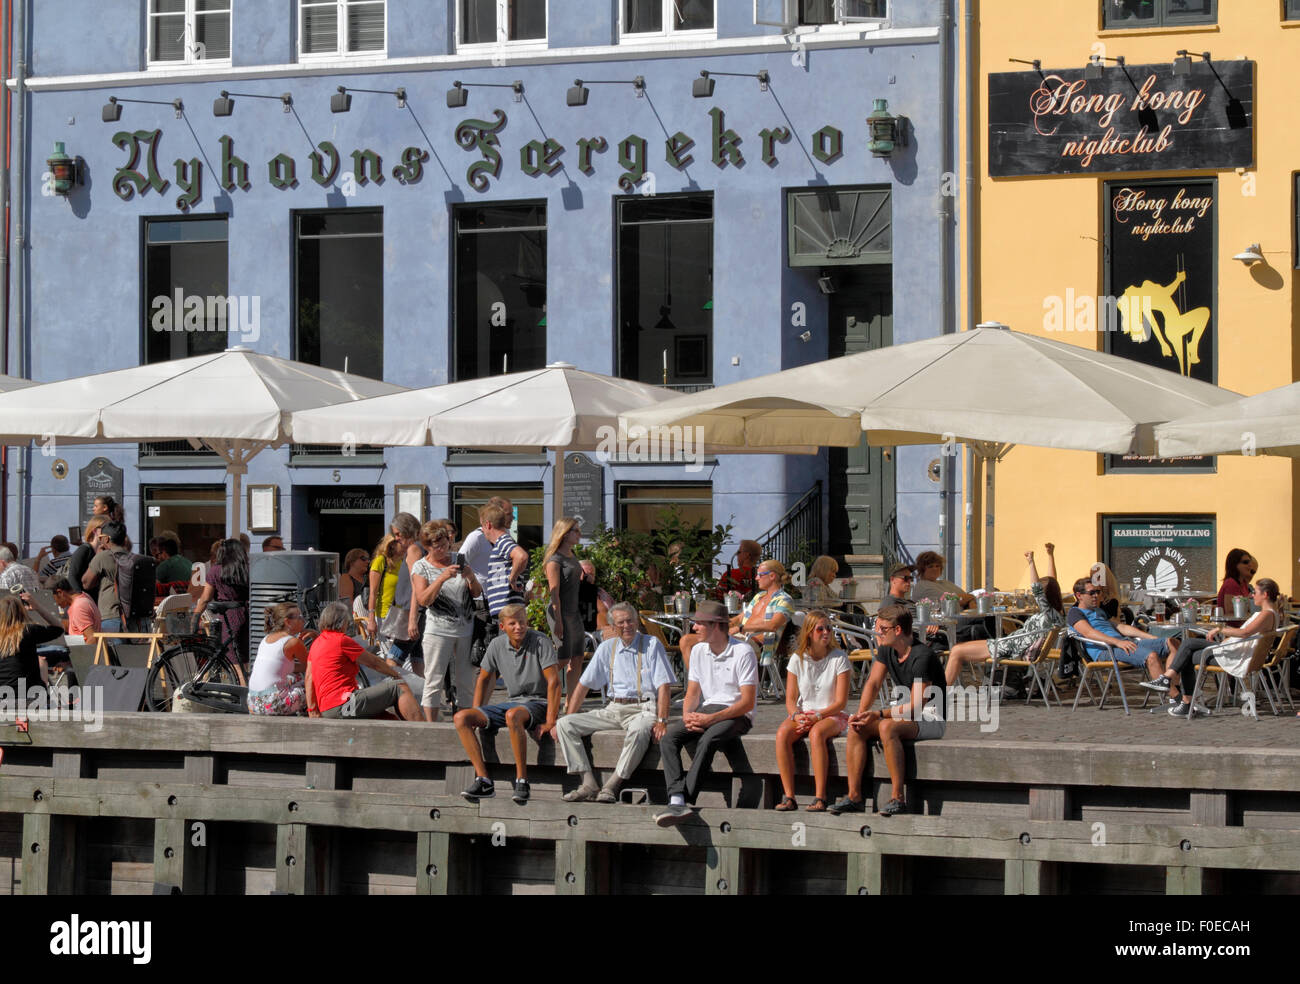 Im gemütlichen Ambiente des bezaubernden Nyhavn treffen sich die Menschen und unterhalten sich über einen Drink in der Sonne. Viele sitzen lieber auf der Wharf unter den alten Schiffen. Hygge. Stockfoto